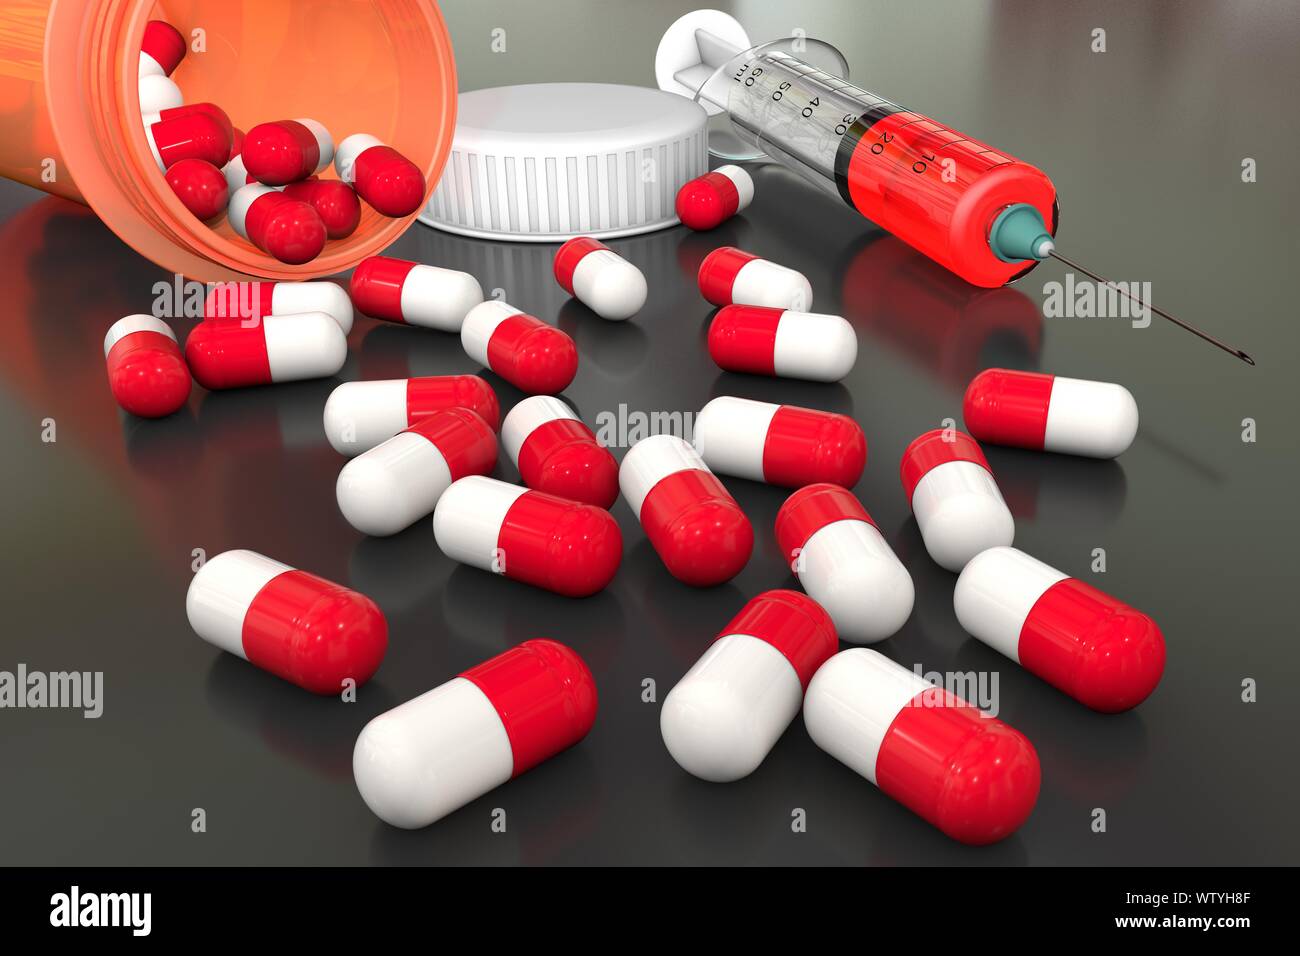 3D-Illustration: Helle farbige medizinische Pillen sind auf eine grau-schwarz-Tabelle aus einer Orange transparent Medizin Flasche zerstreut. Mit roten sol Spritze. Stockfoto